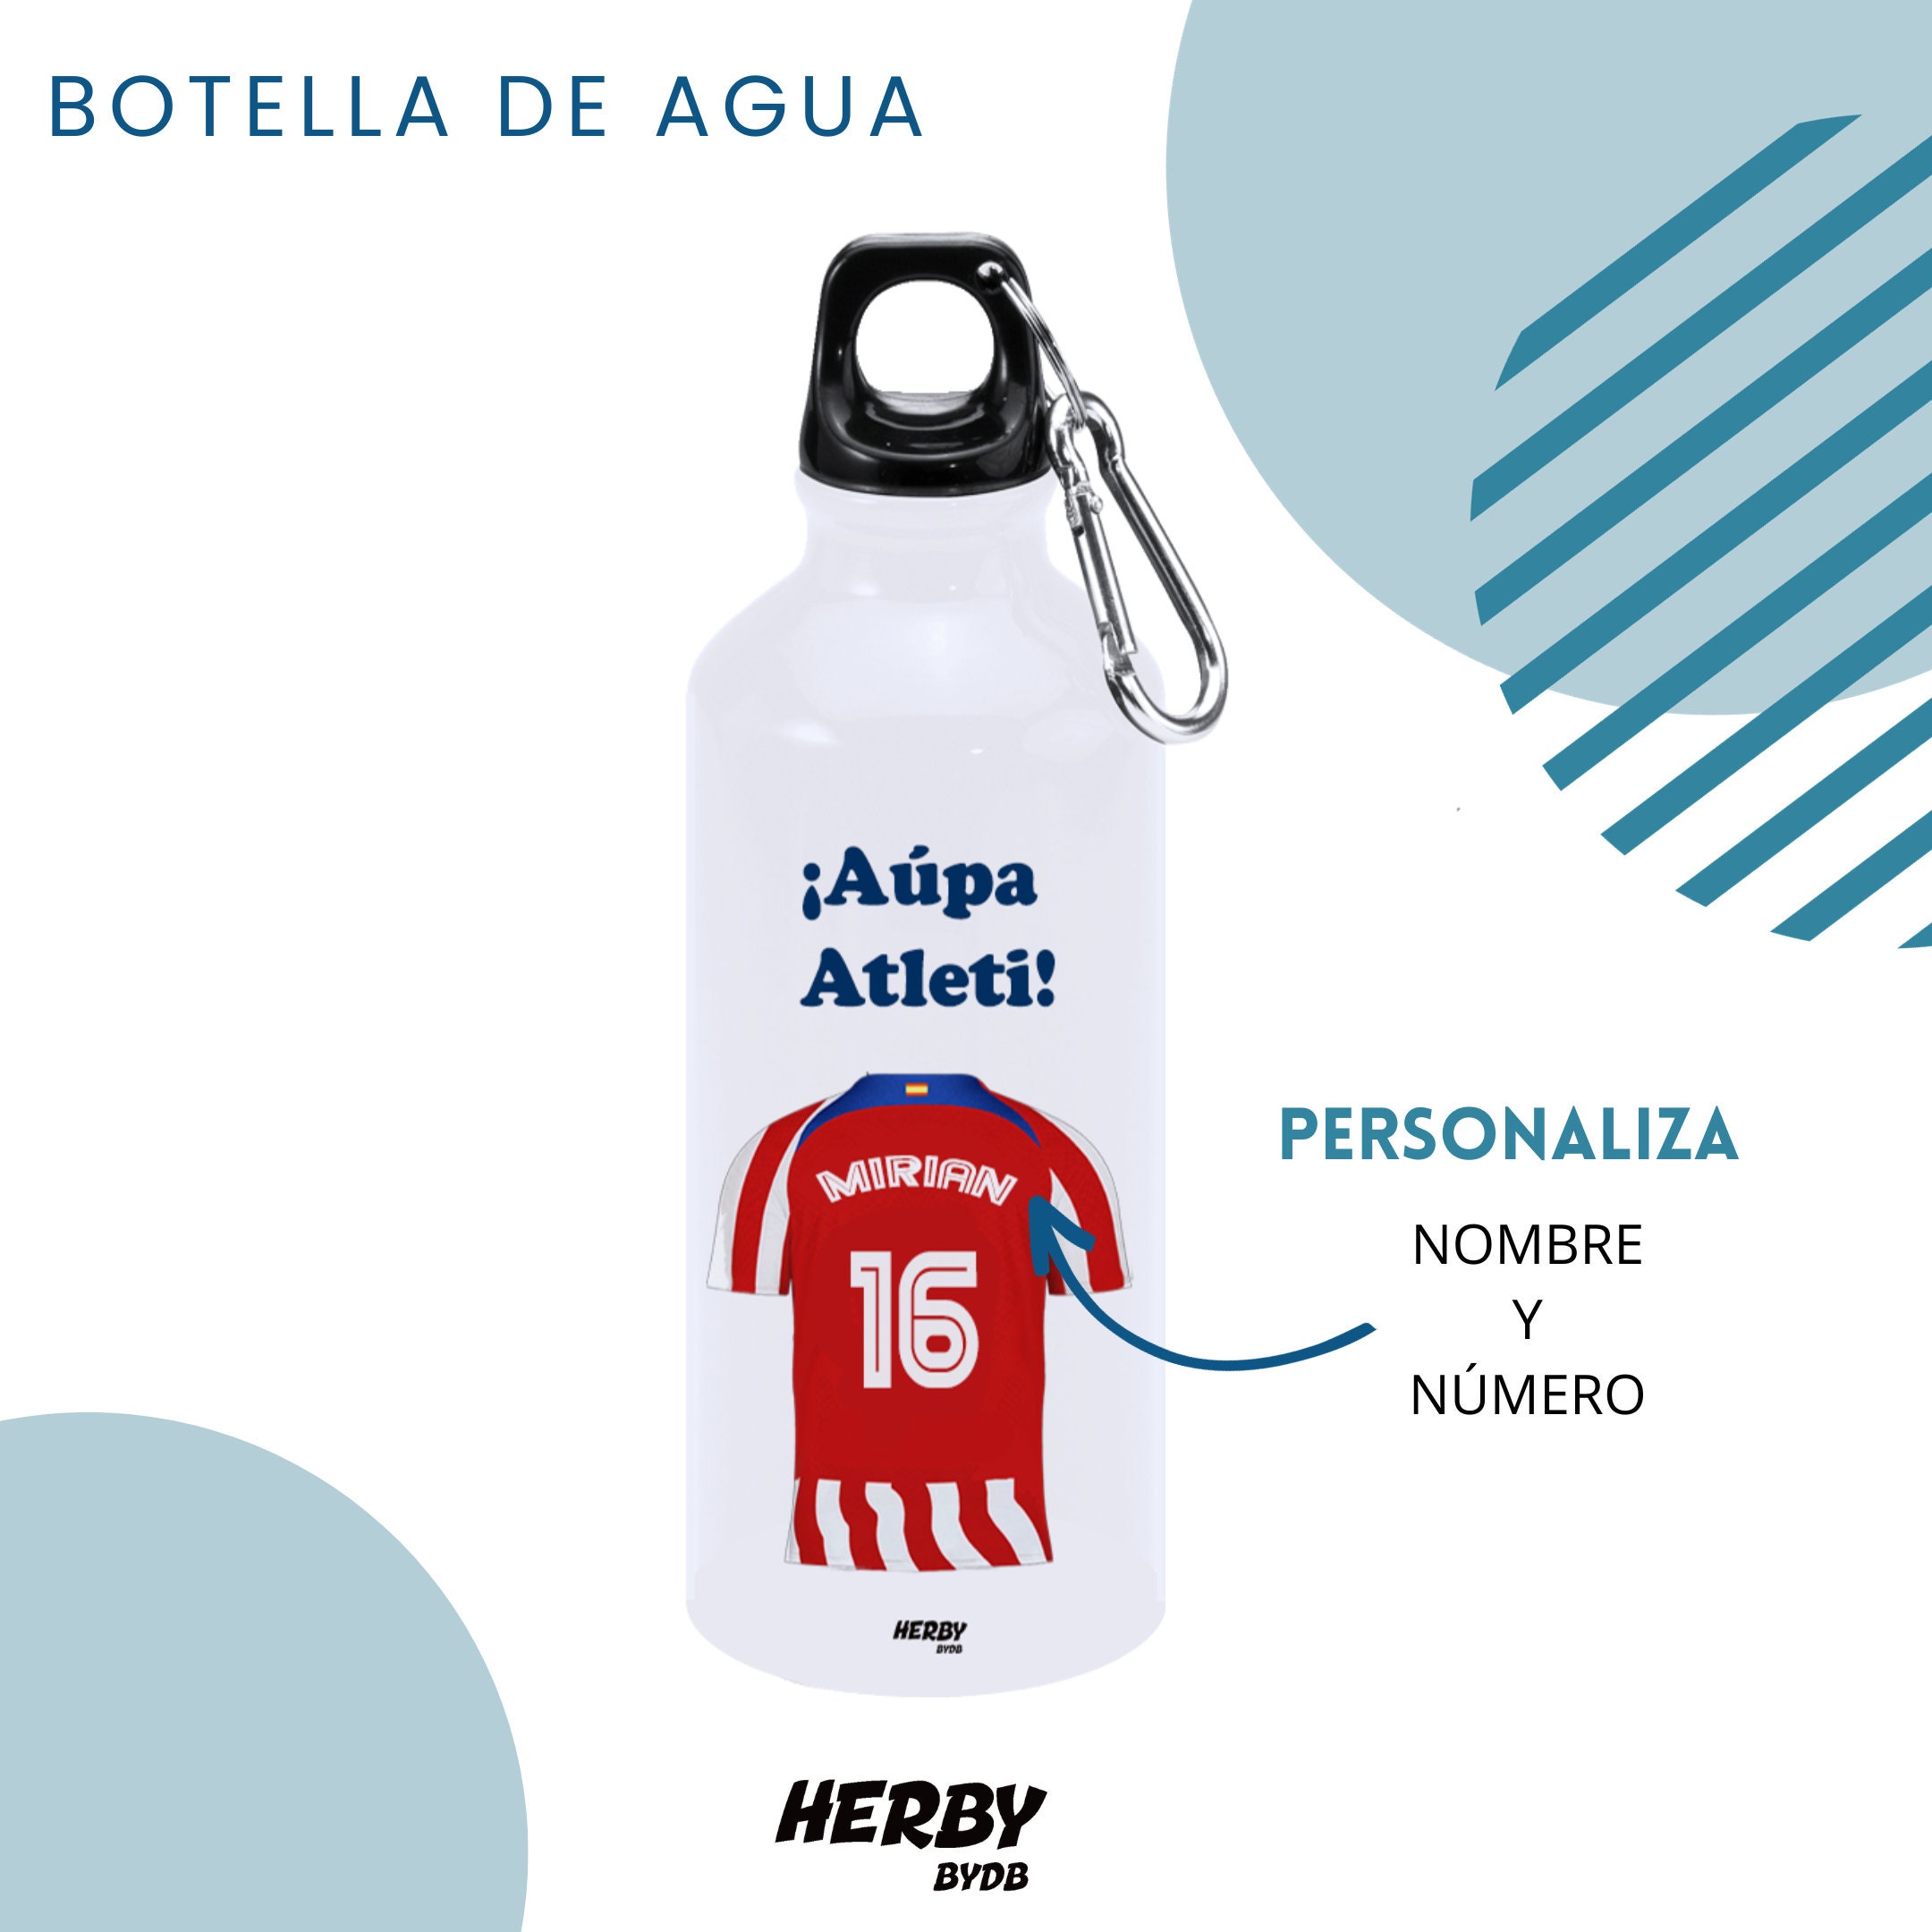 Botella De Agua Del Barça Personalizada Con Equipo De Futbol Y Nombre,  Botellas Para Niños Personalizadas Con Nombre, Cantimplora De Agua 